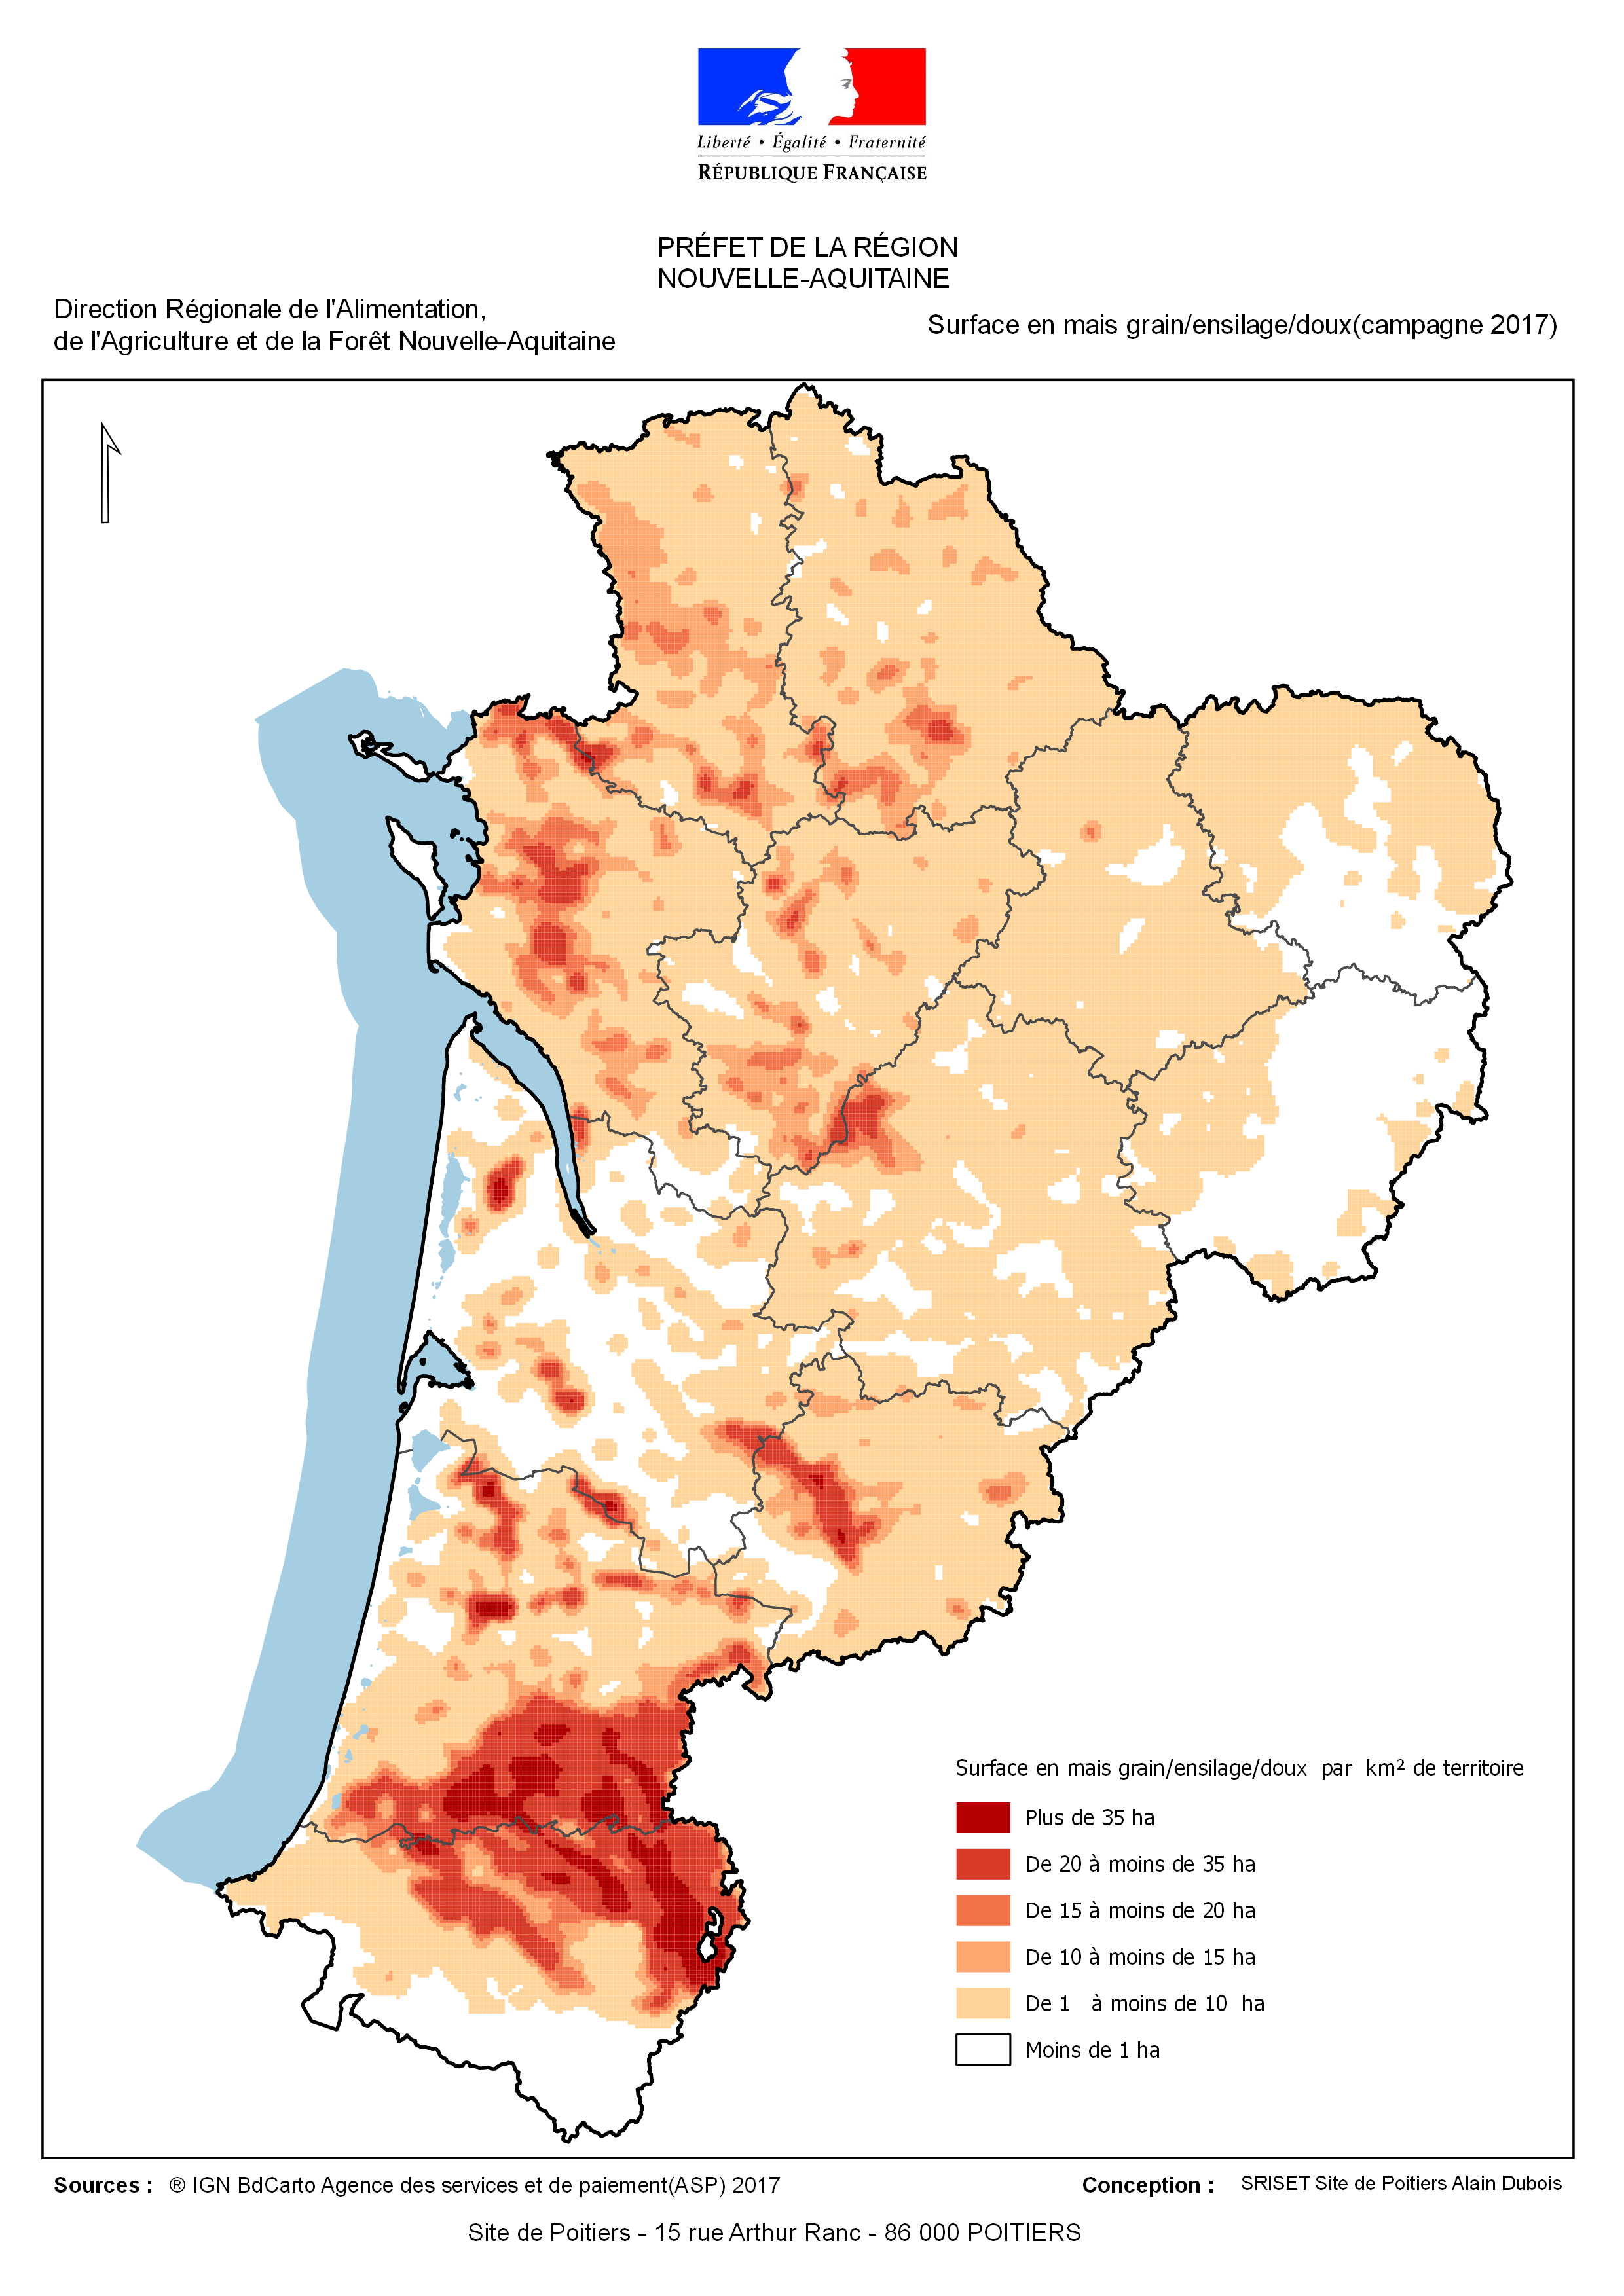 Nouvelle Aquitaine : Les surfaces semées en mais grain-semence durant la campagne 2017